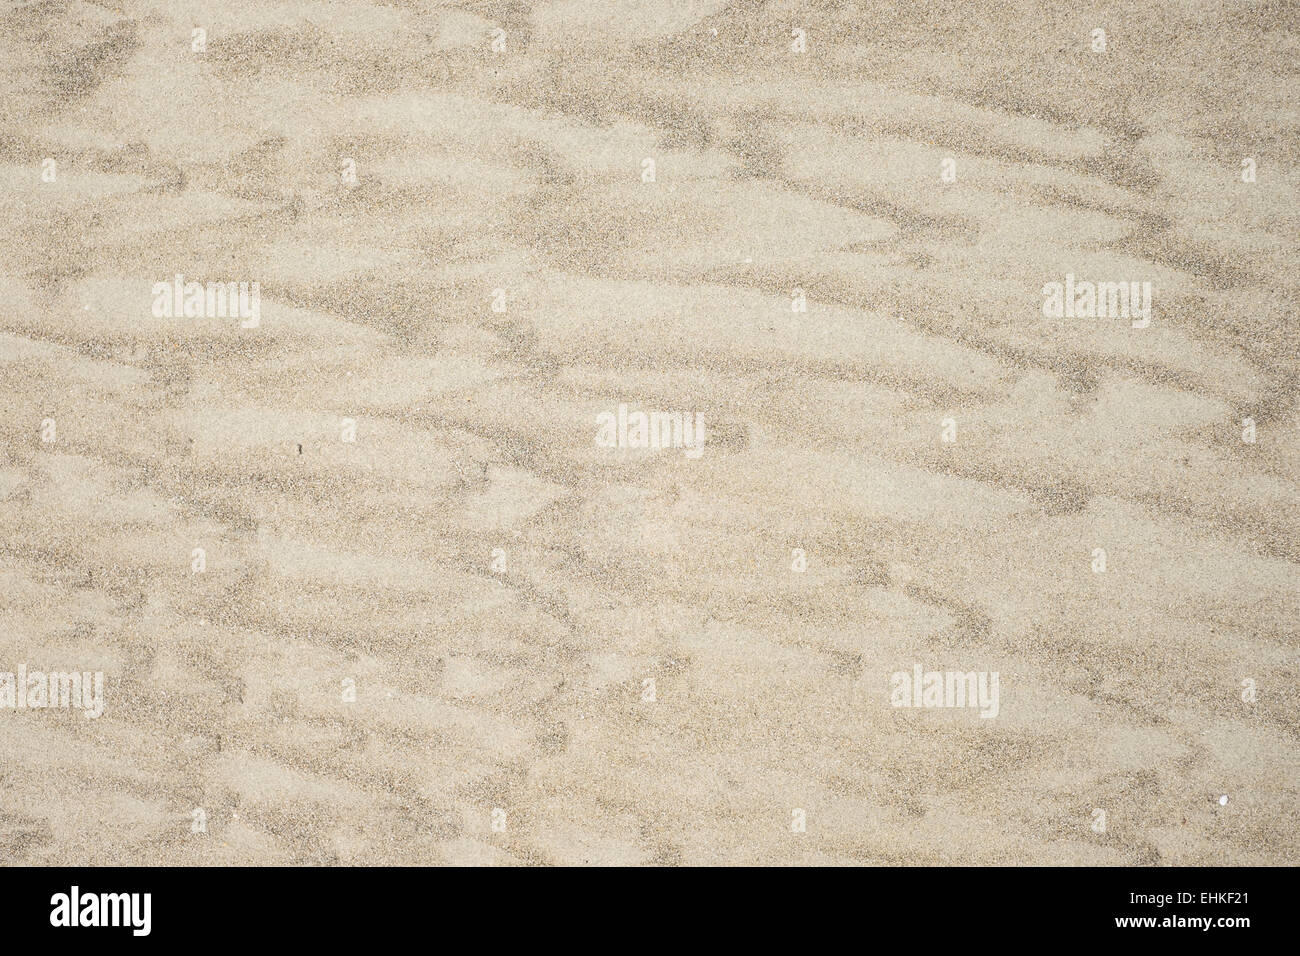 Texture di sabbia sulla spiaggia, con disegni realizzati dal mare. Foto Stock